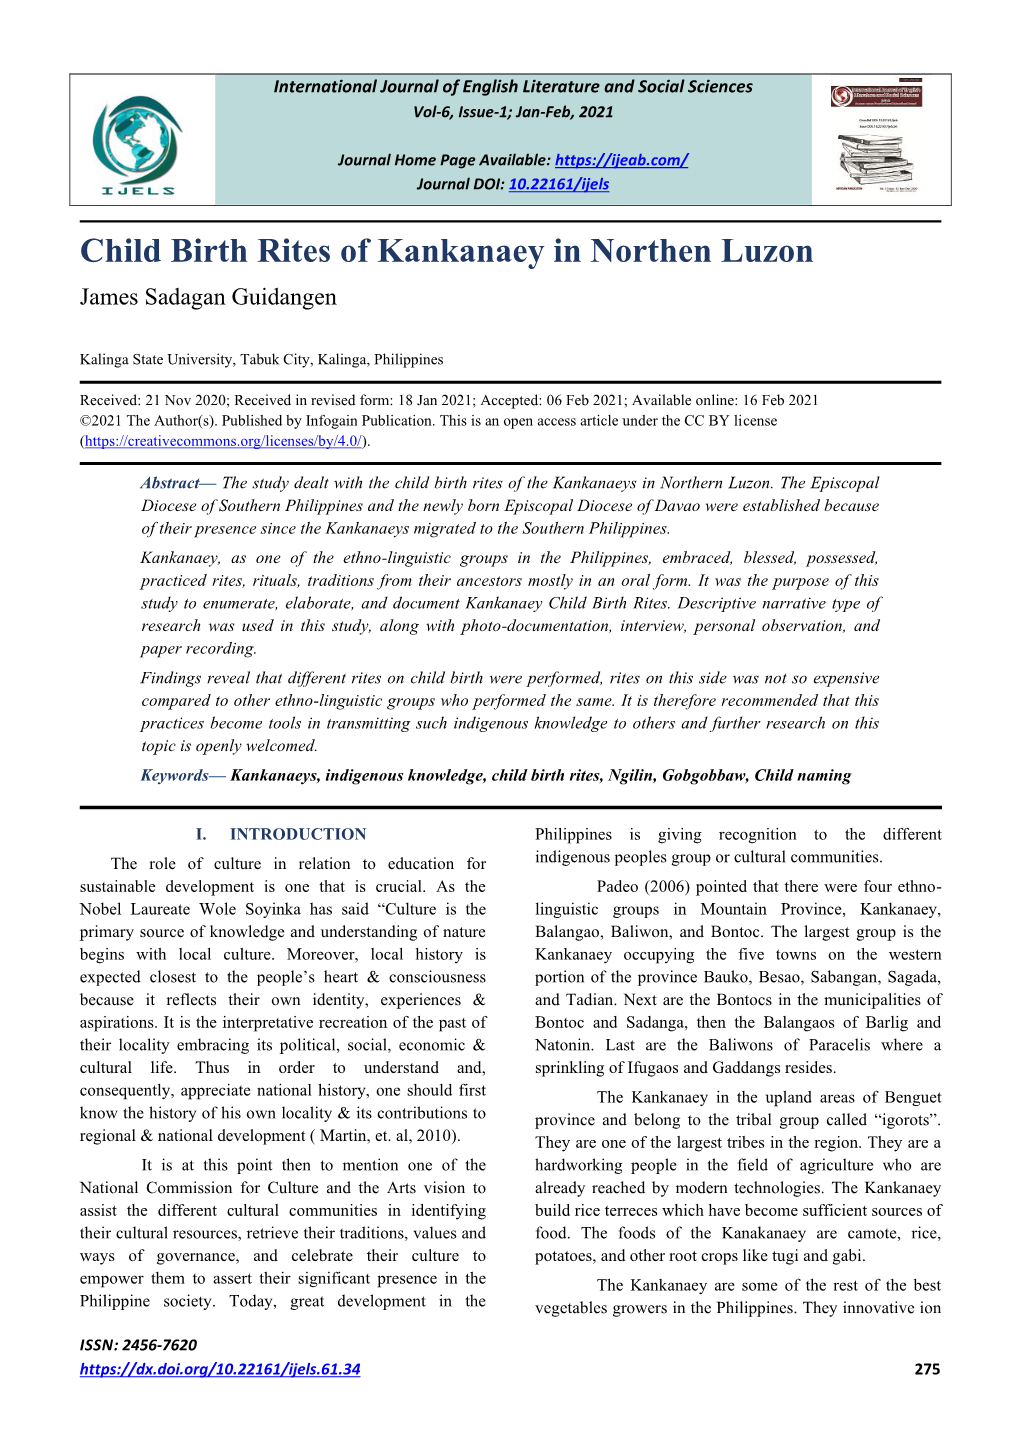 Child Birth Rites of Kankanaey in Northen Luzon James Sadagan Guidangen